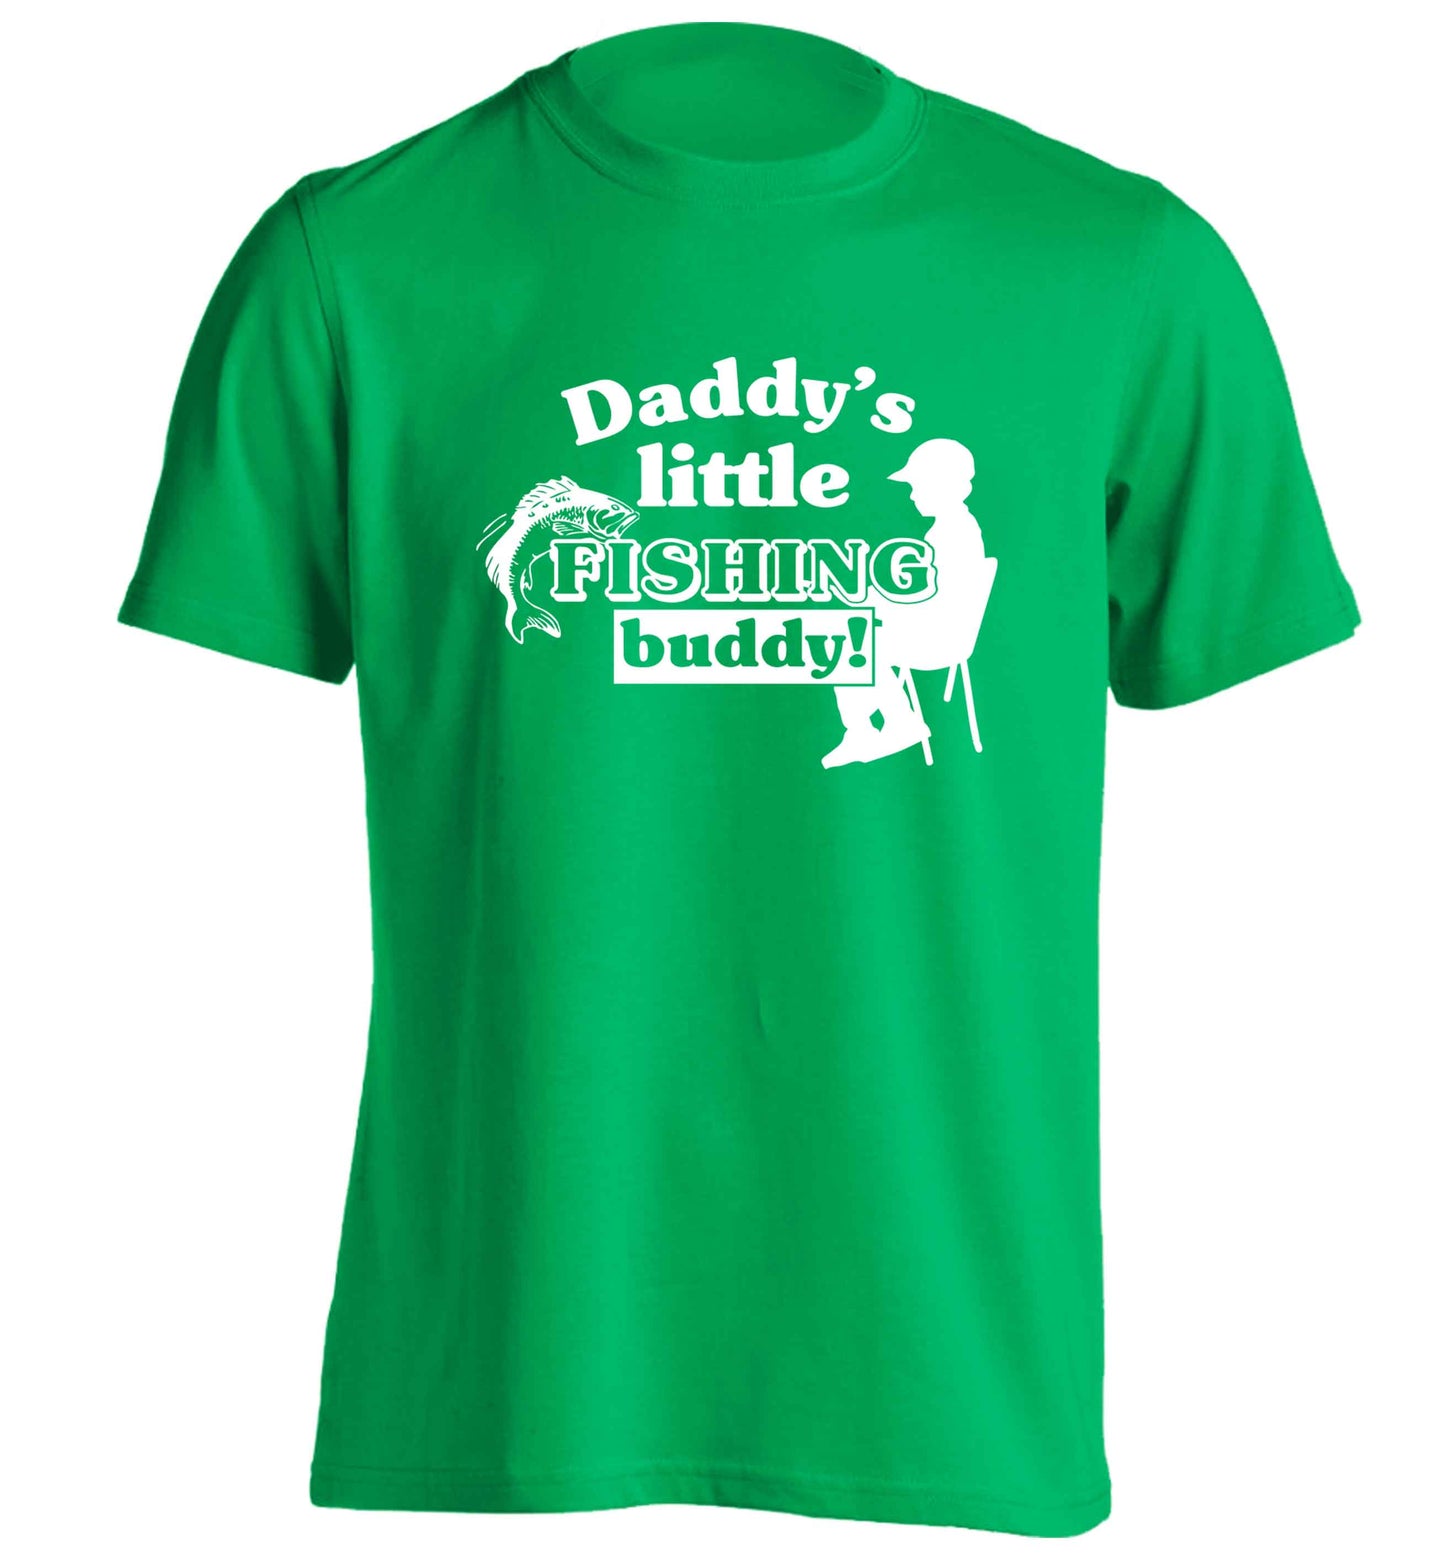 Daddy's little fishing buddy adults unisex green Tshirt 2XL